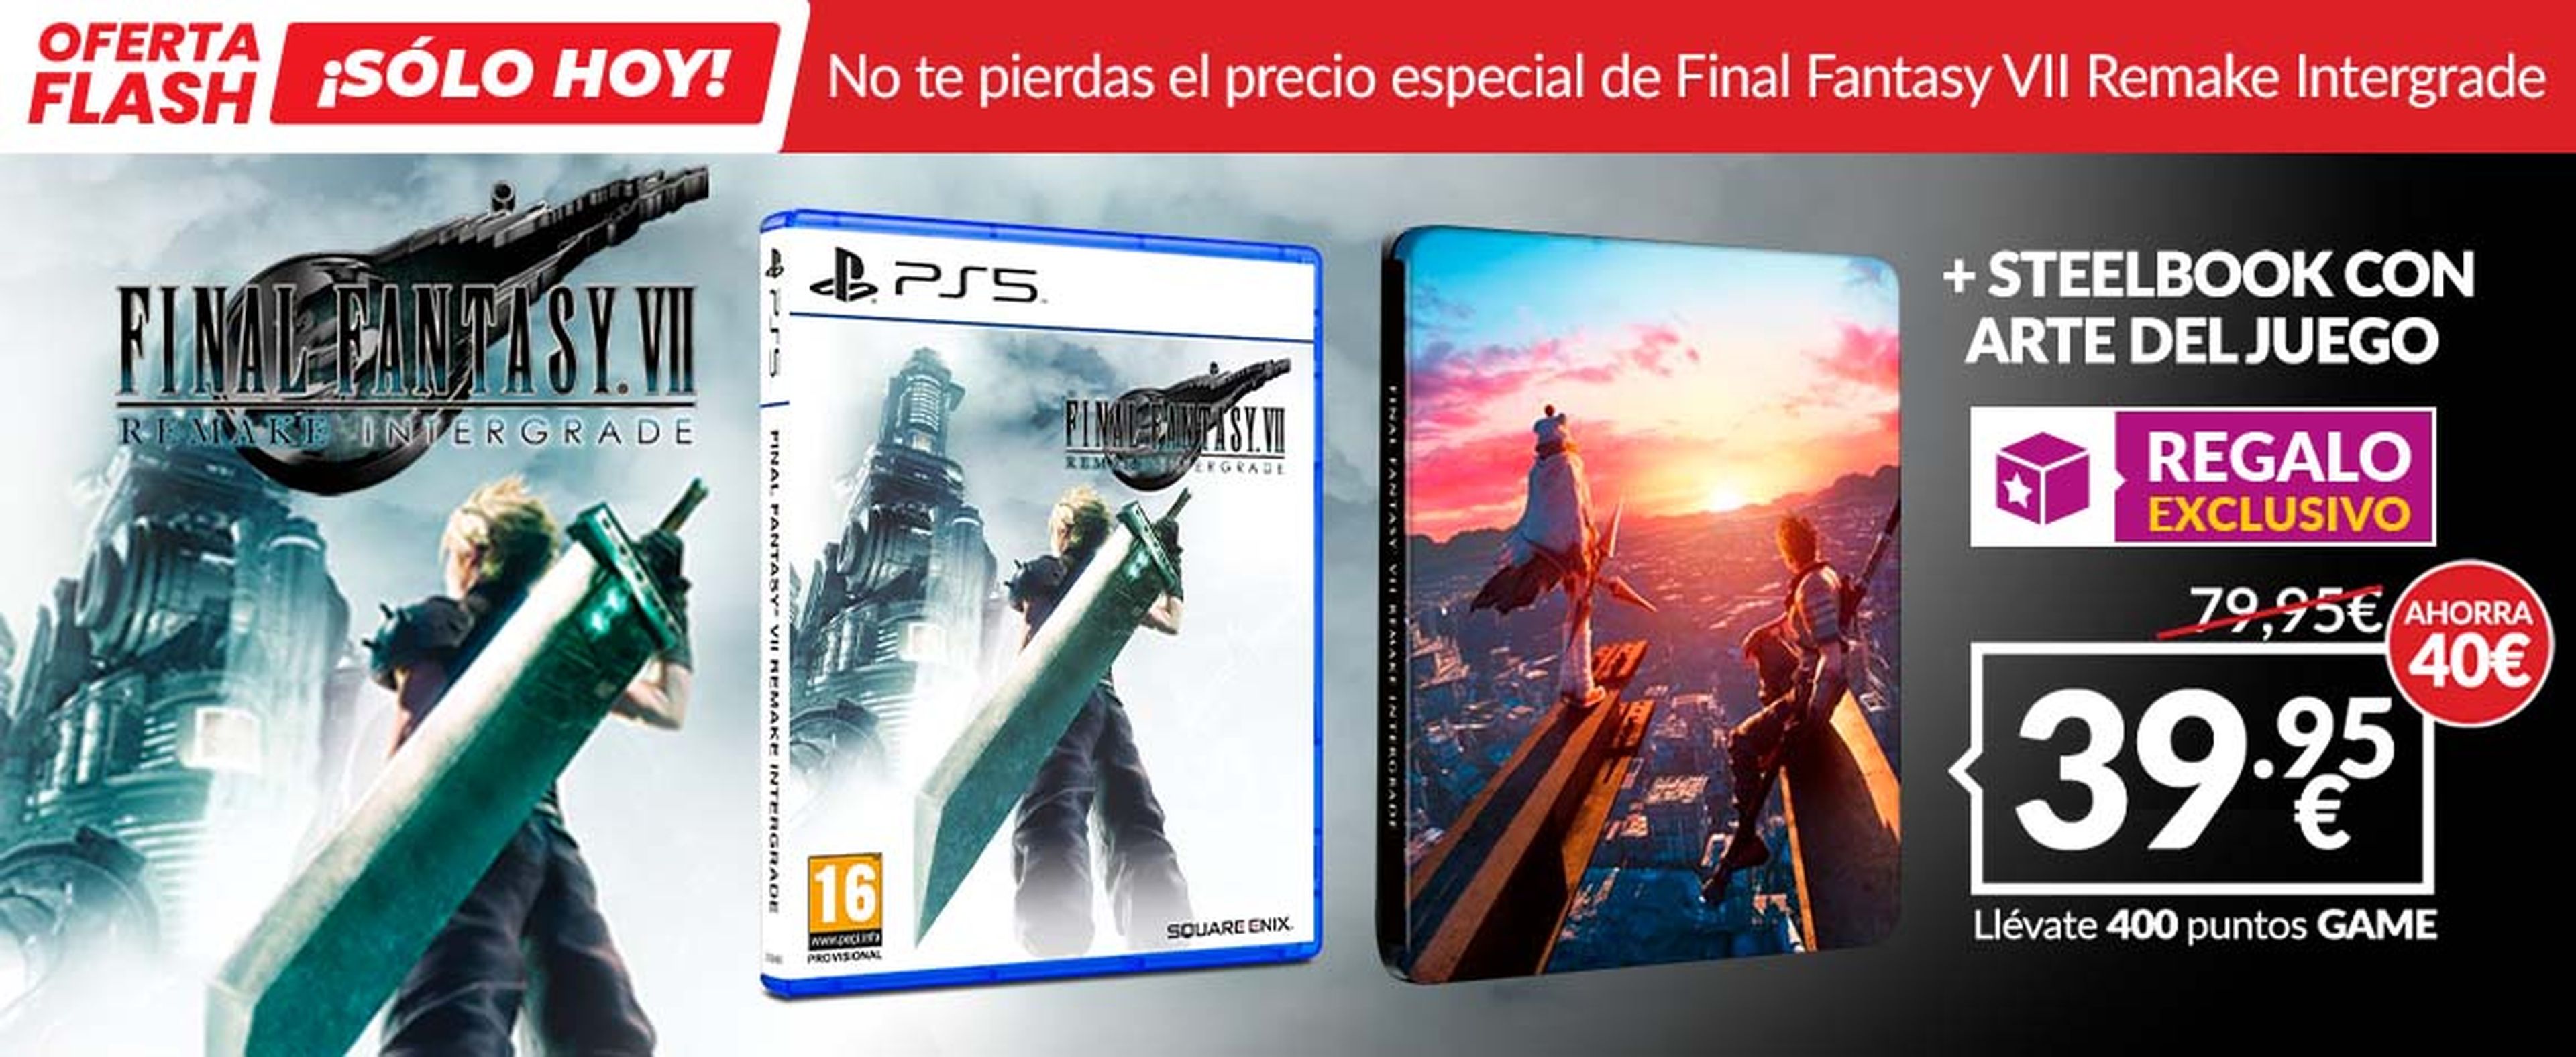 Oferta flash de GAME: Final Fantasy VII Remake Intergrade para PS5 por  39,95 € - ¡Solo disponible hoy!